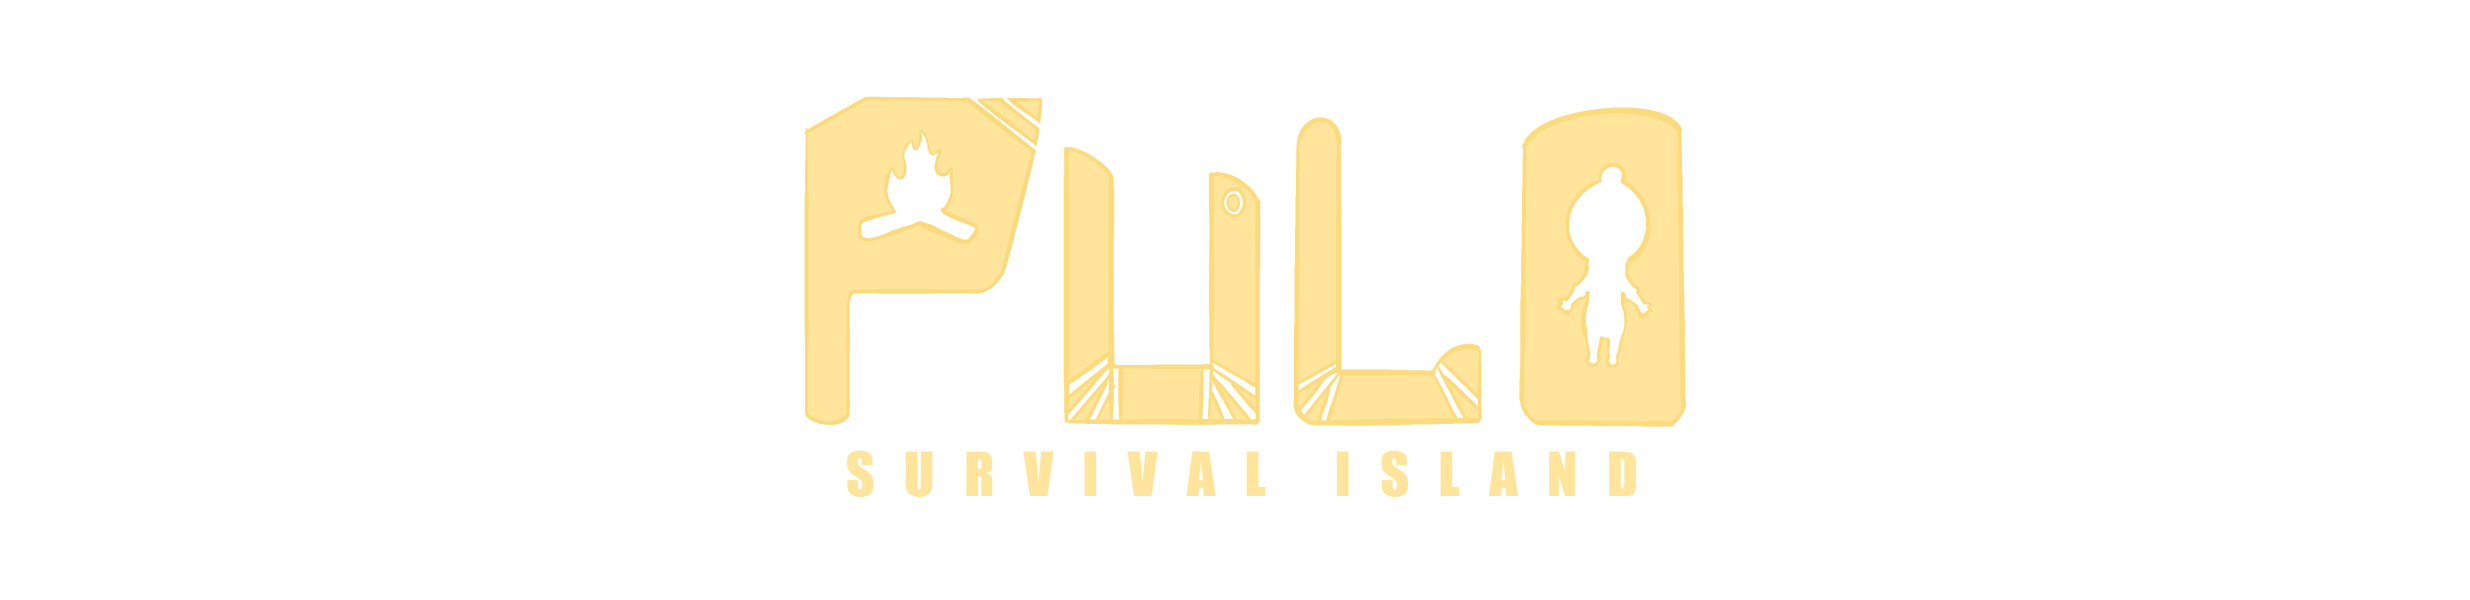 Pulo: Survival Island